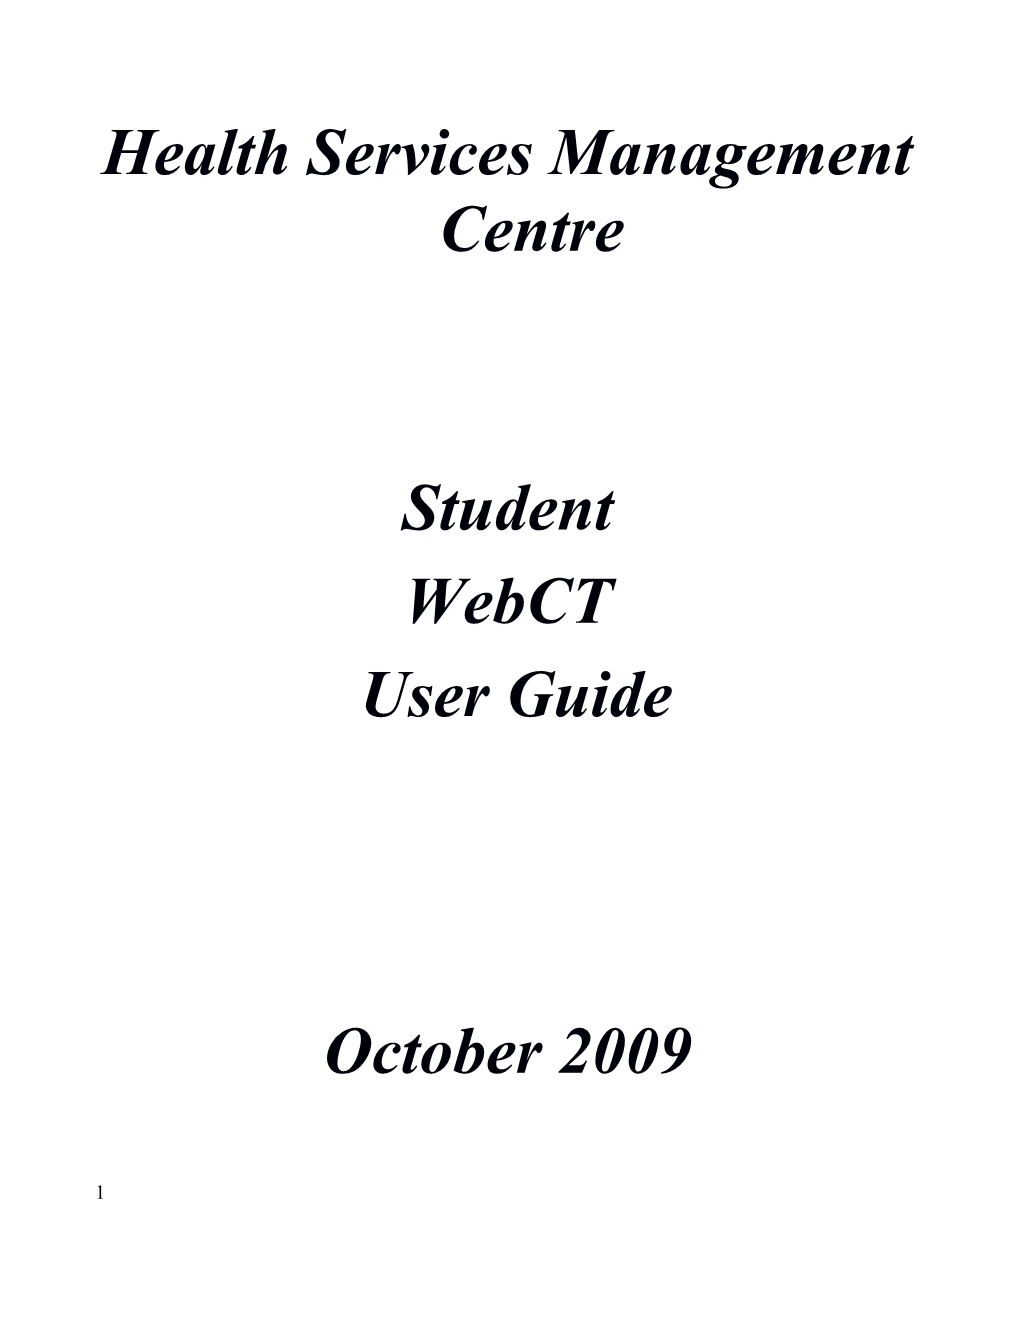 Health Services Management Centre